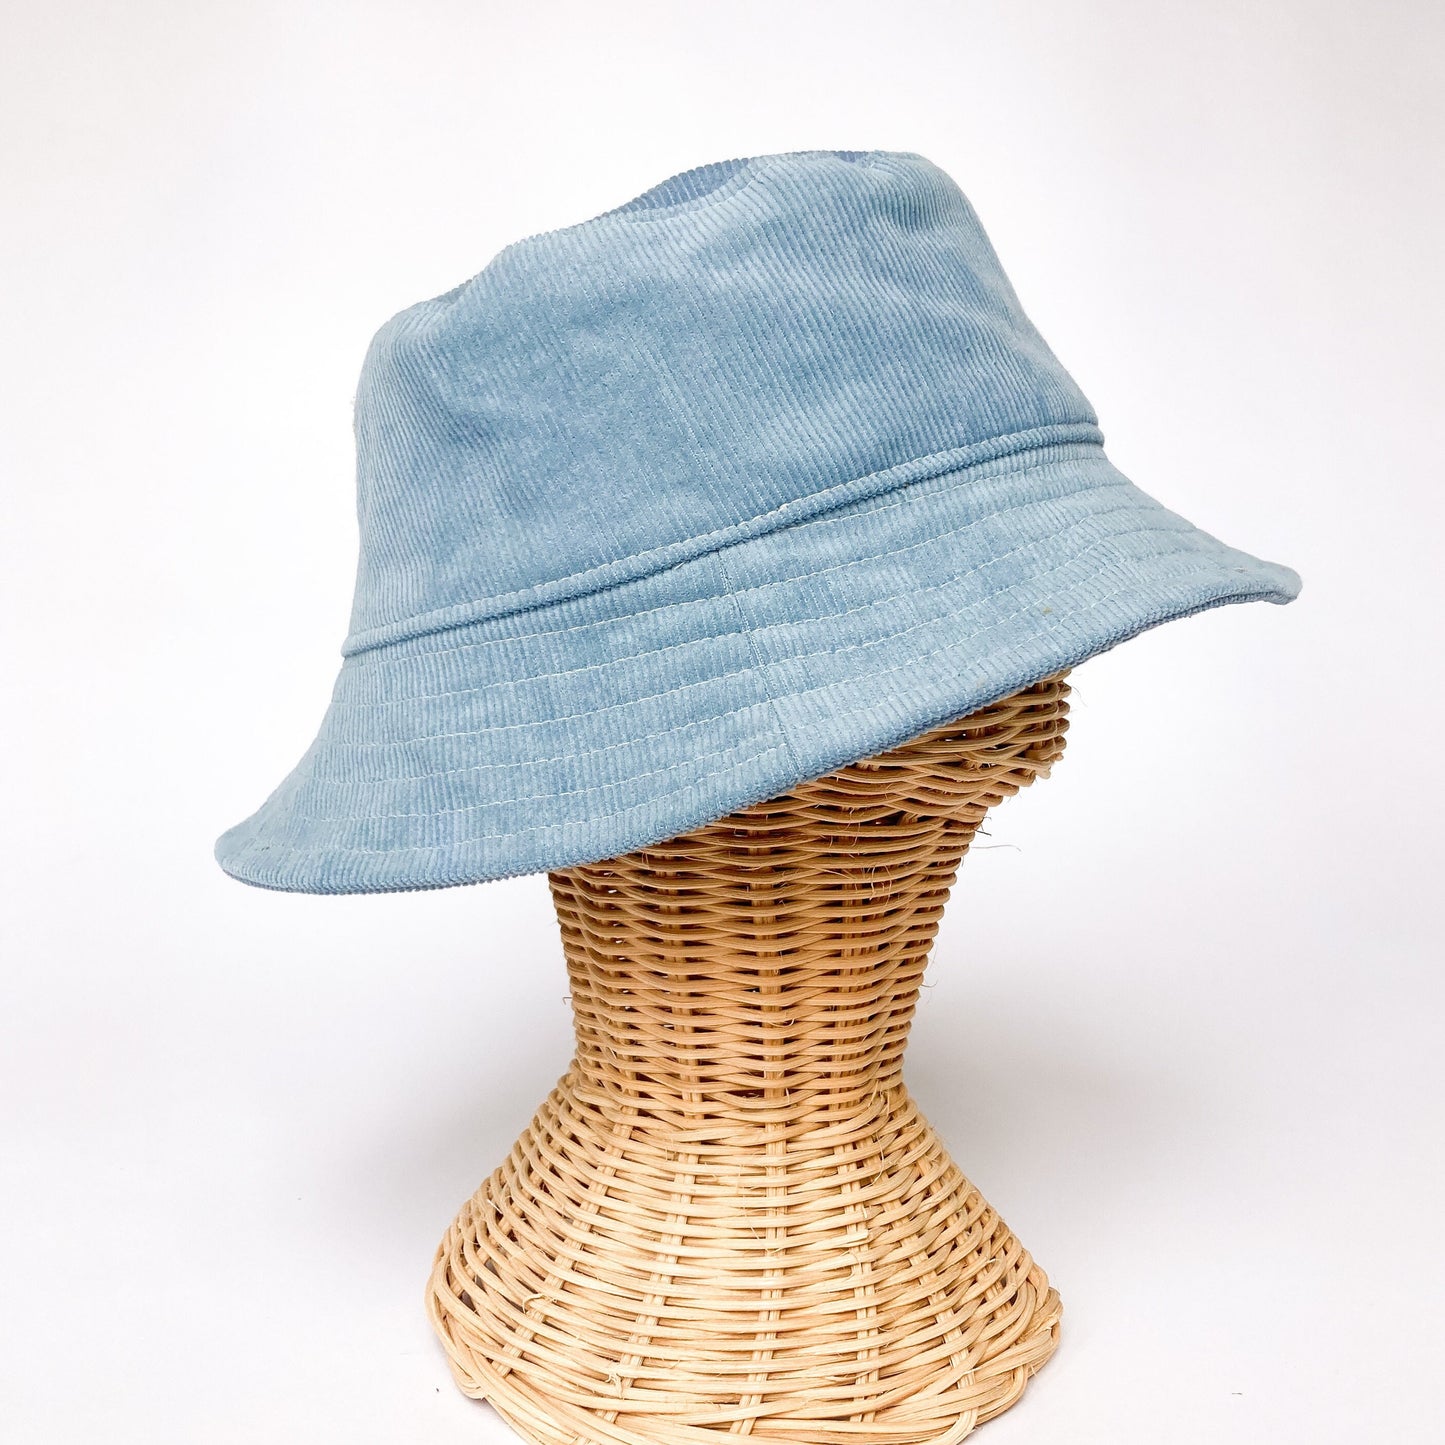 Baby Bucket Hat, Blue Corduroy Hat, Sun Hat for Boy, Toddler Bucket Hat, Baby Summer Hat, Floppy Beach Hat, Summer Baby Gift, Newborn Cap